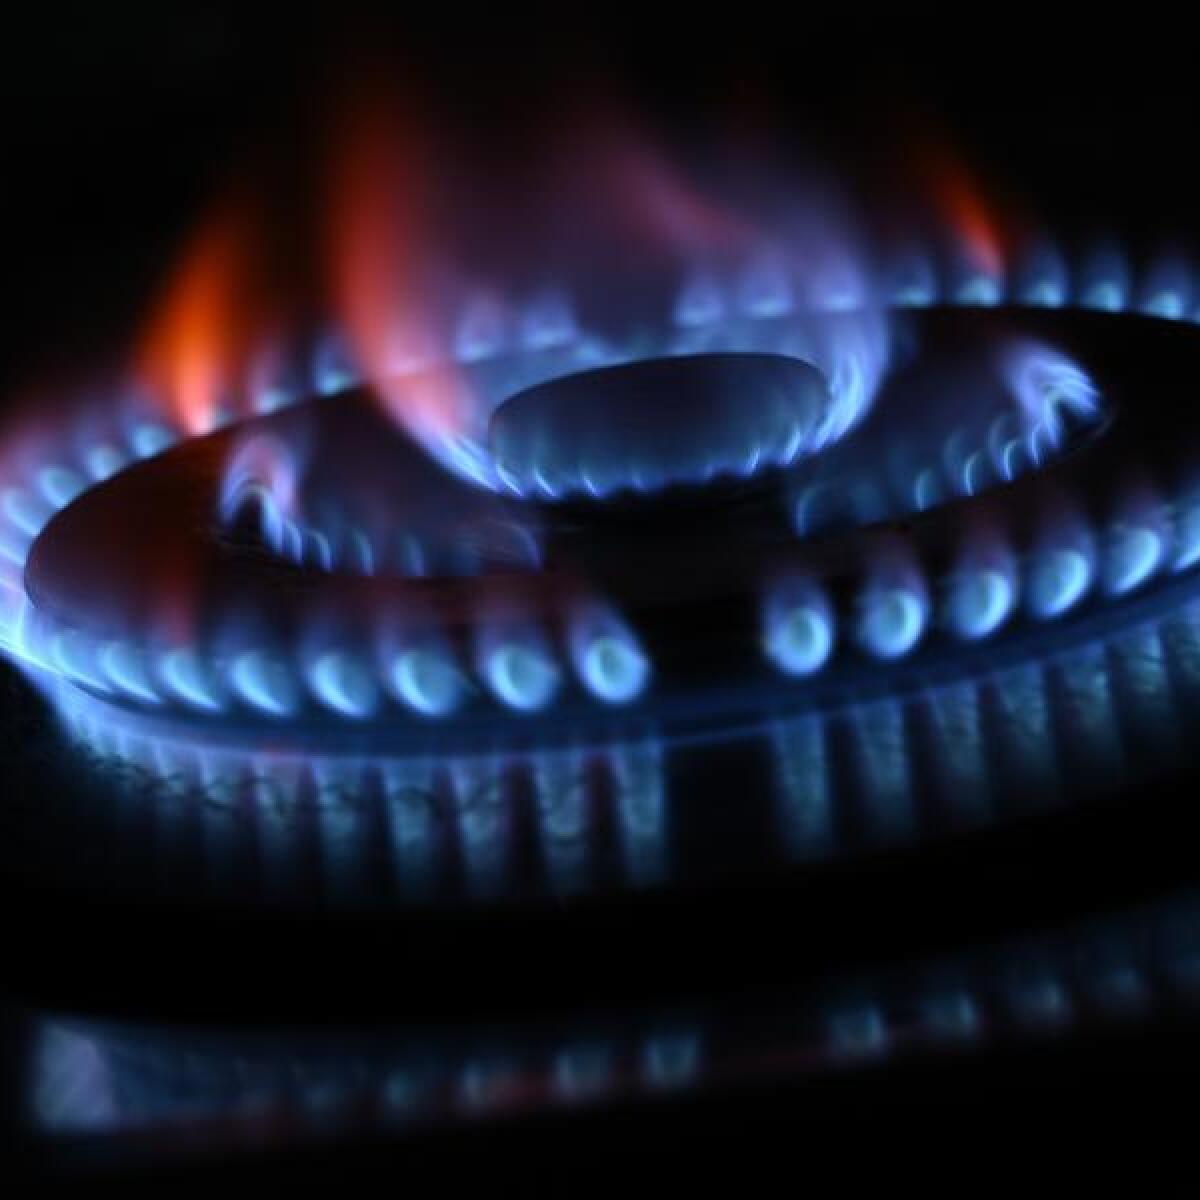 Gas supply concerns